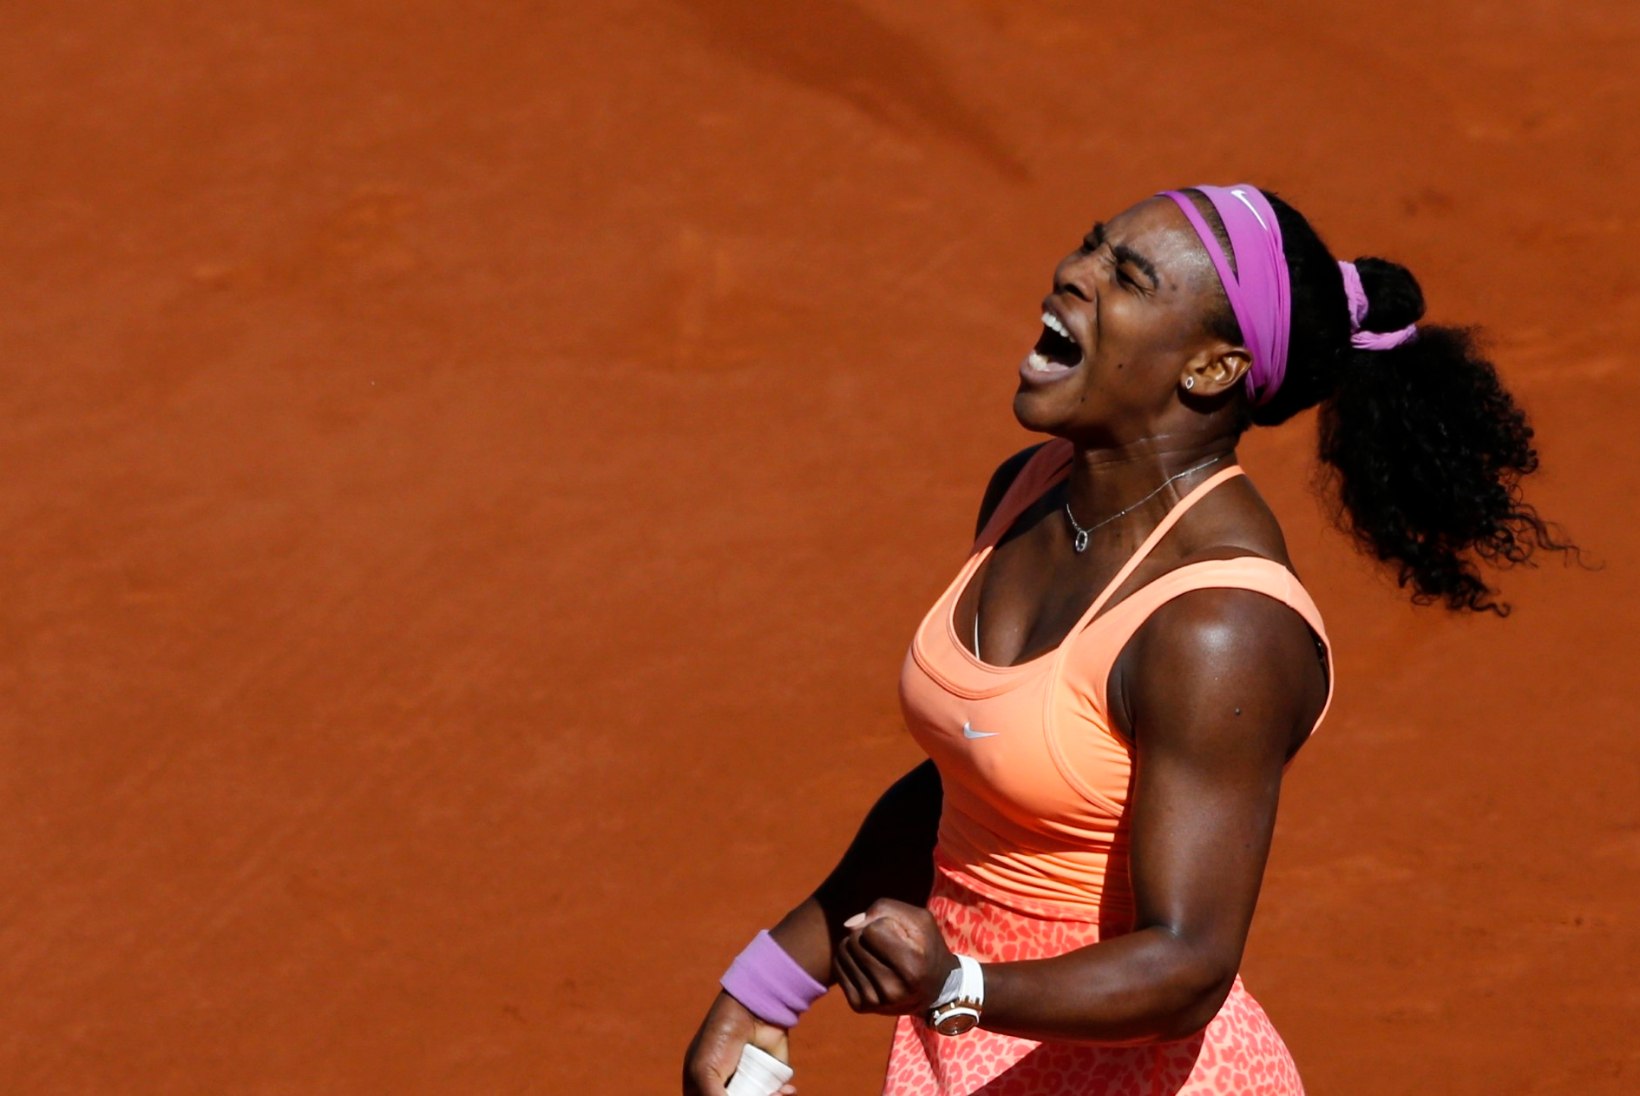 GALERII | Prantsuste lahtiste tšempion Serena Williams astus ajaloolisele saavutusele sammu võrra lähemale